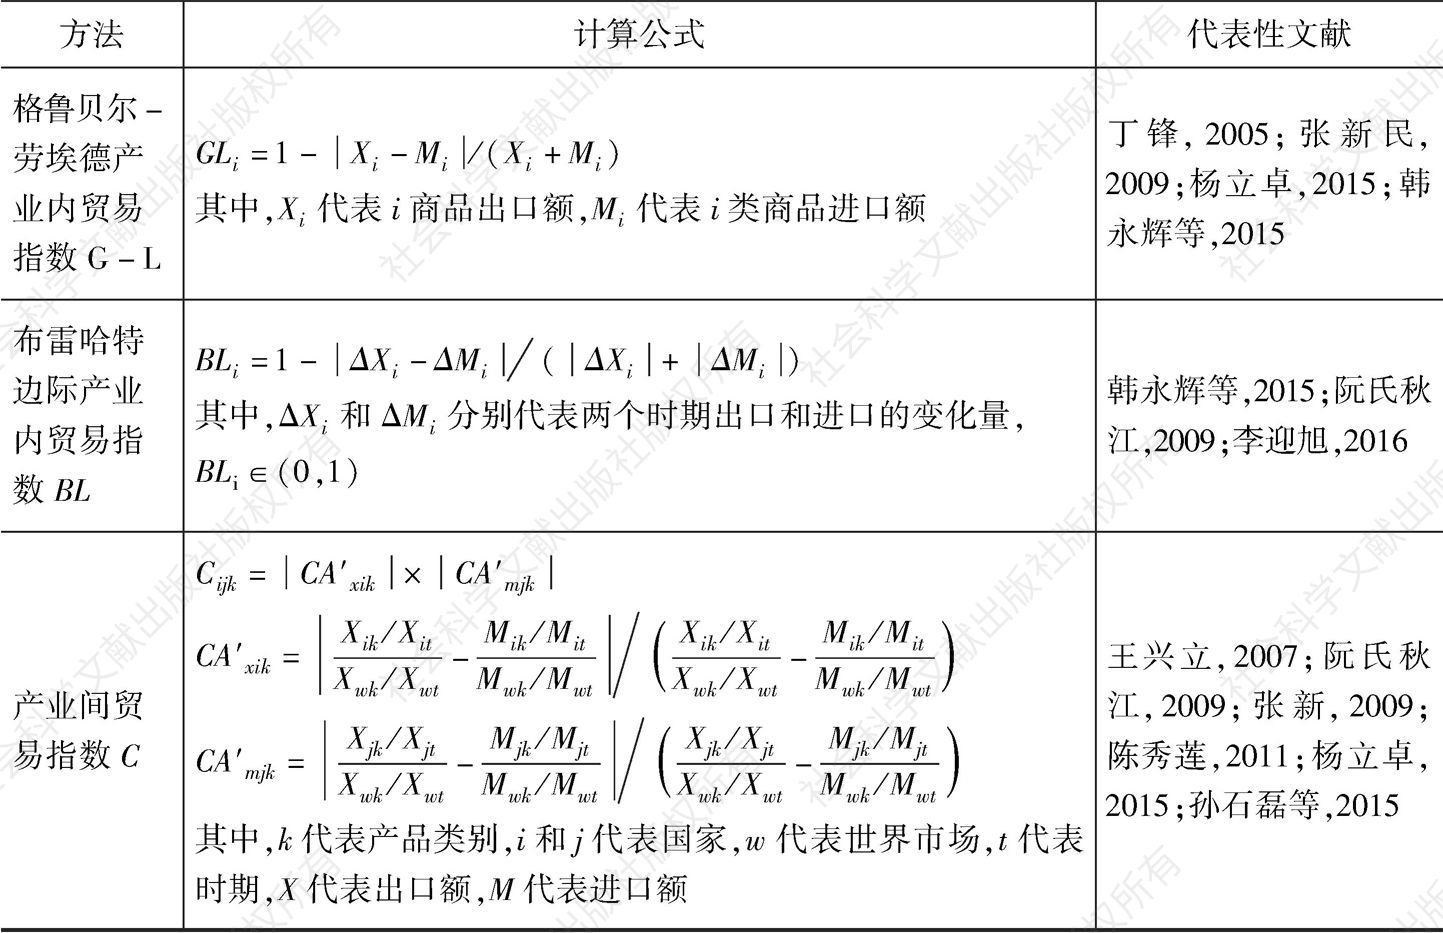 表21-2 测算贸易竞争与互补关系的常用指数、计算公式和代表性文献-续表2